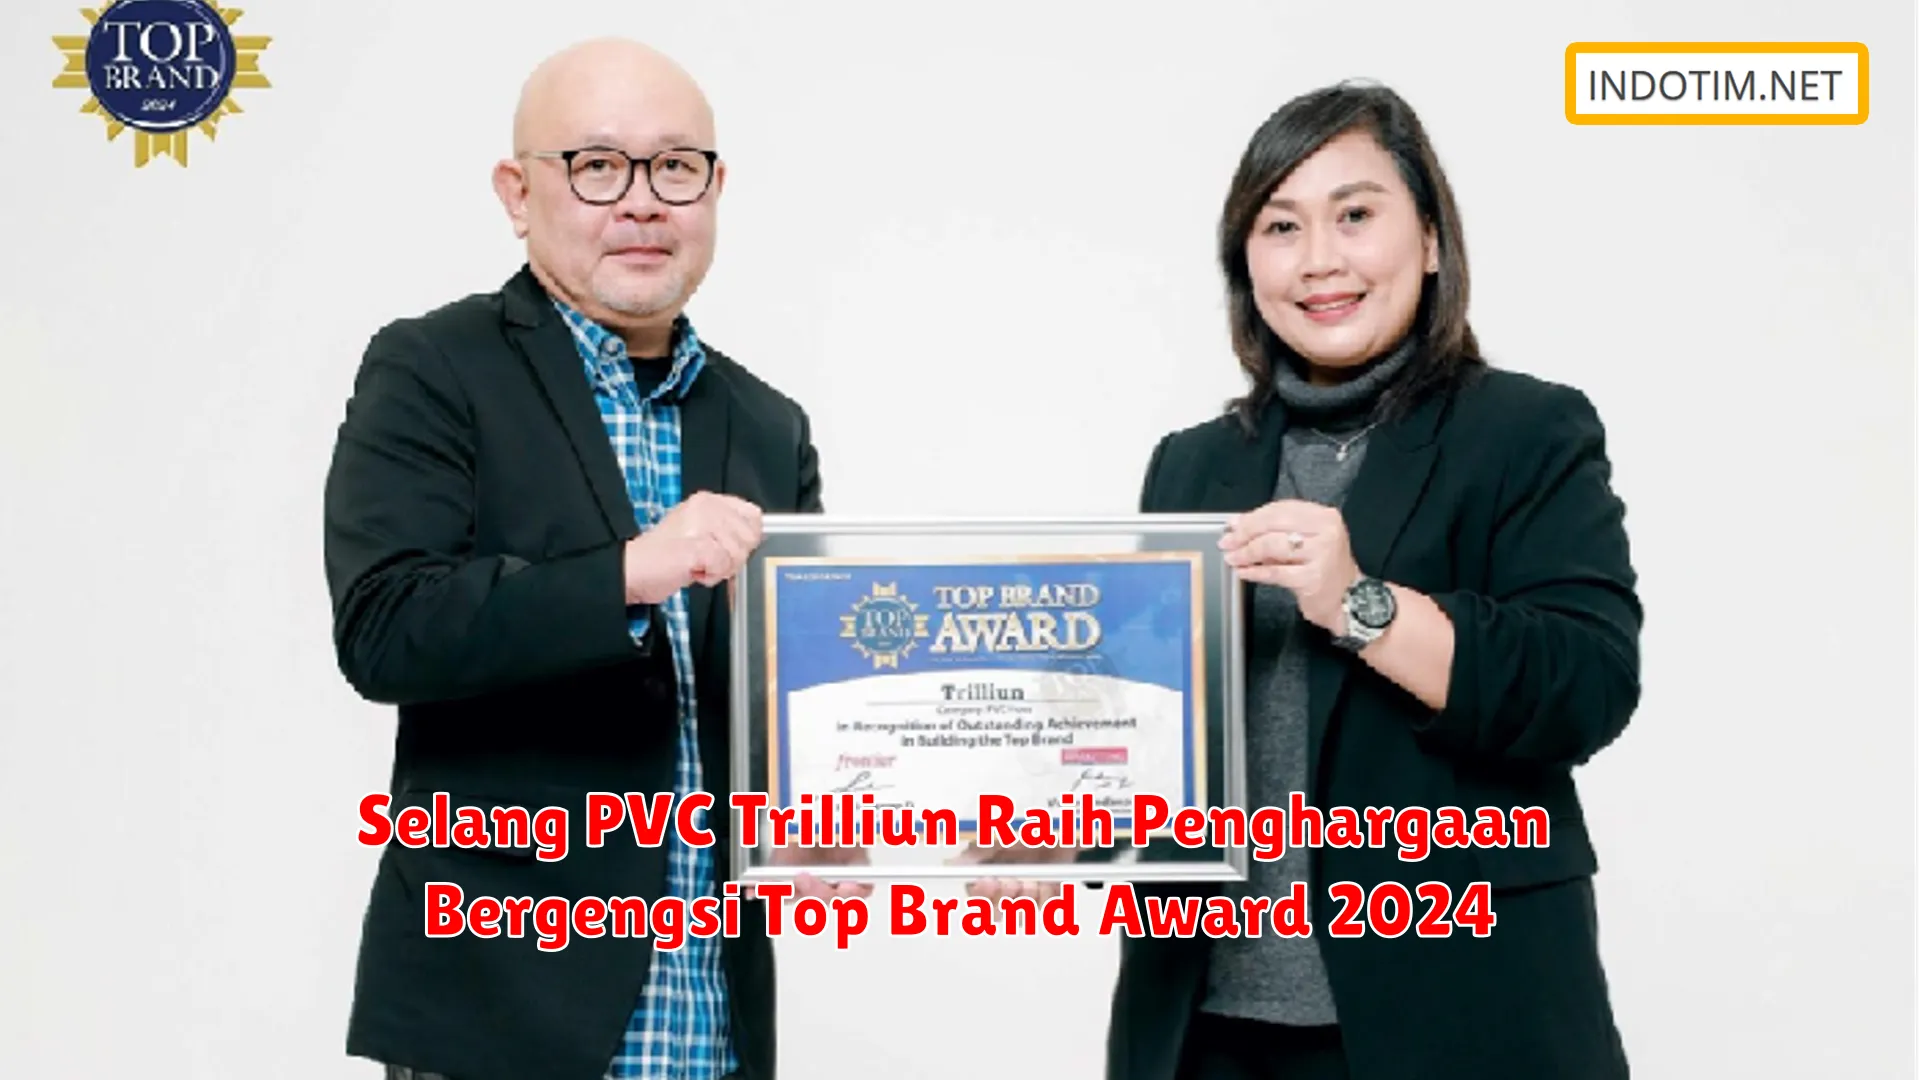 Selang PVC Trilliun Raih Penghargaan Bergengsi Top Brand Award 2024